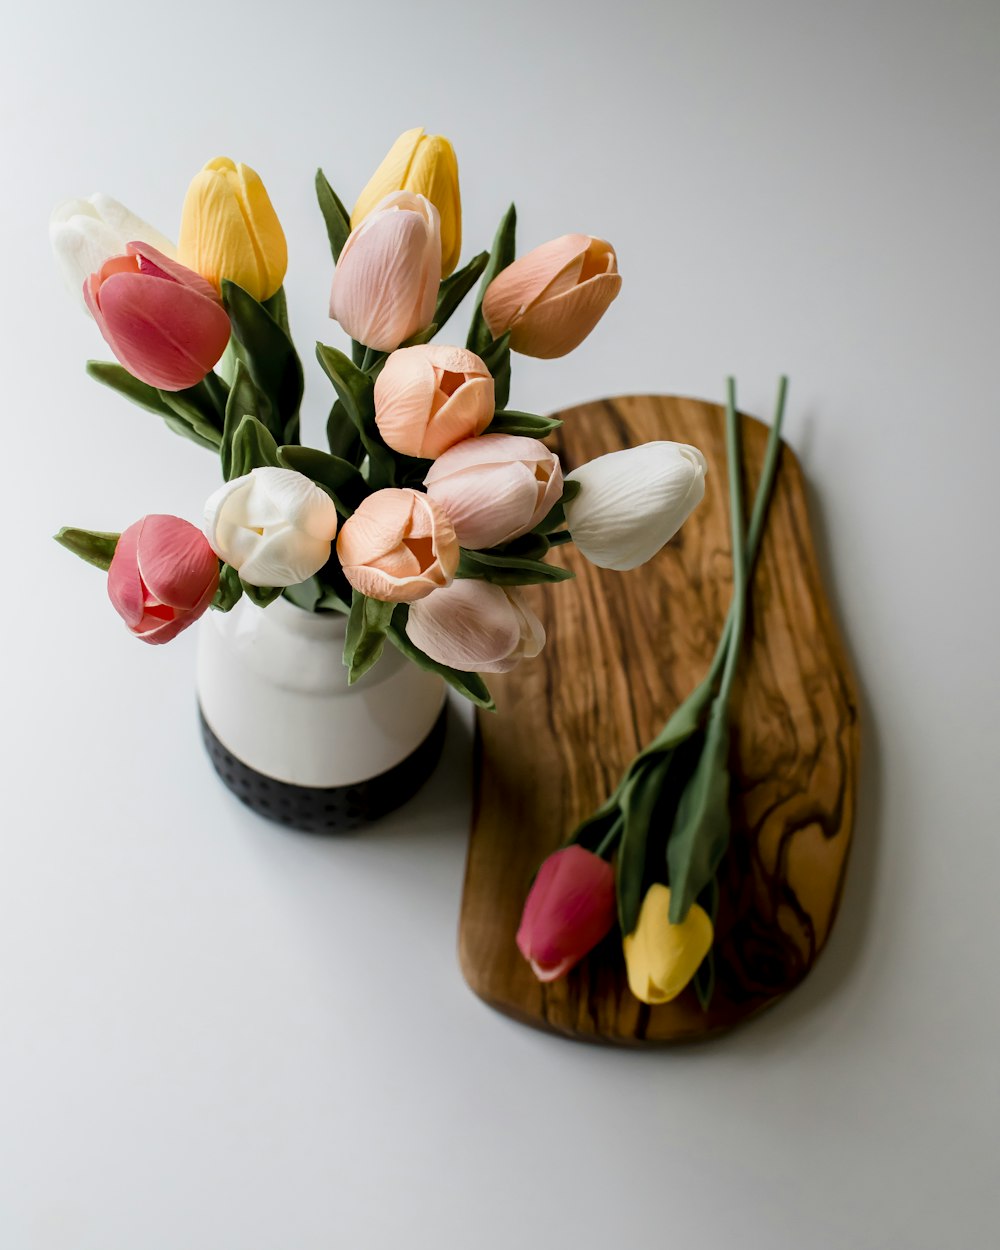 Tulipanes rosas y blancos en jarrón de cerámica blanca y marrón